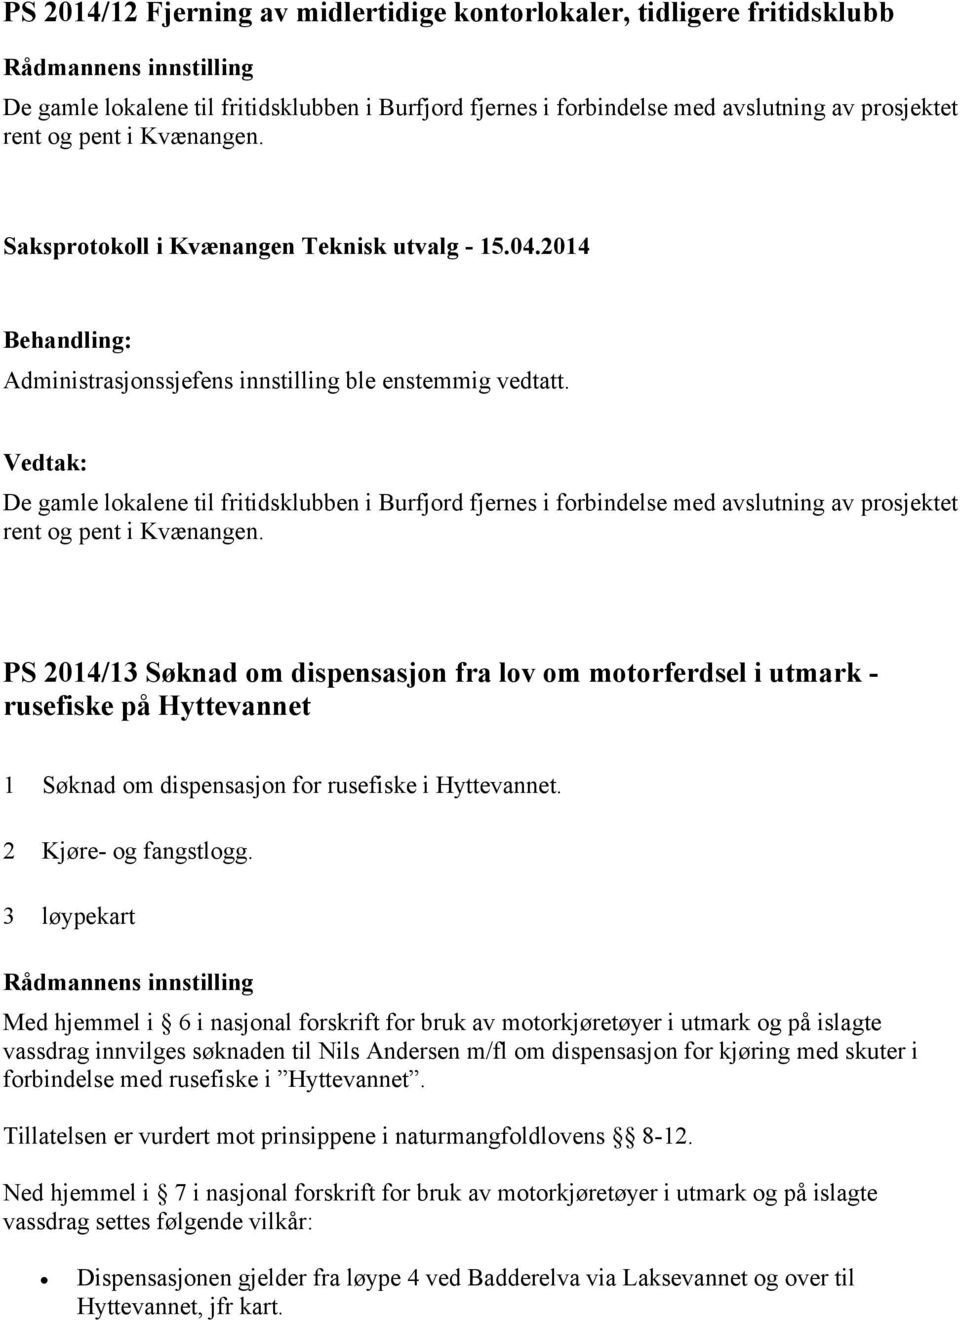 PS 2014/13 Søknad om dispensasjon fra lov om motorferdsel i utmark - rusefiske på Hyttevannet 1 Søknad om dispensasjon for rusefiske i Hyttevannet. 2 Kjøre- og fangstlogg.